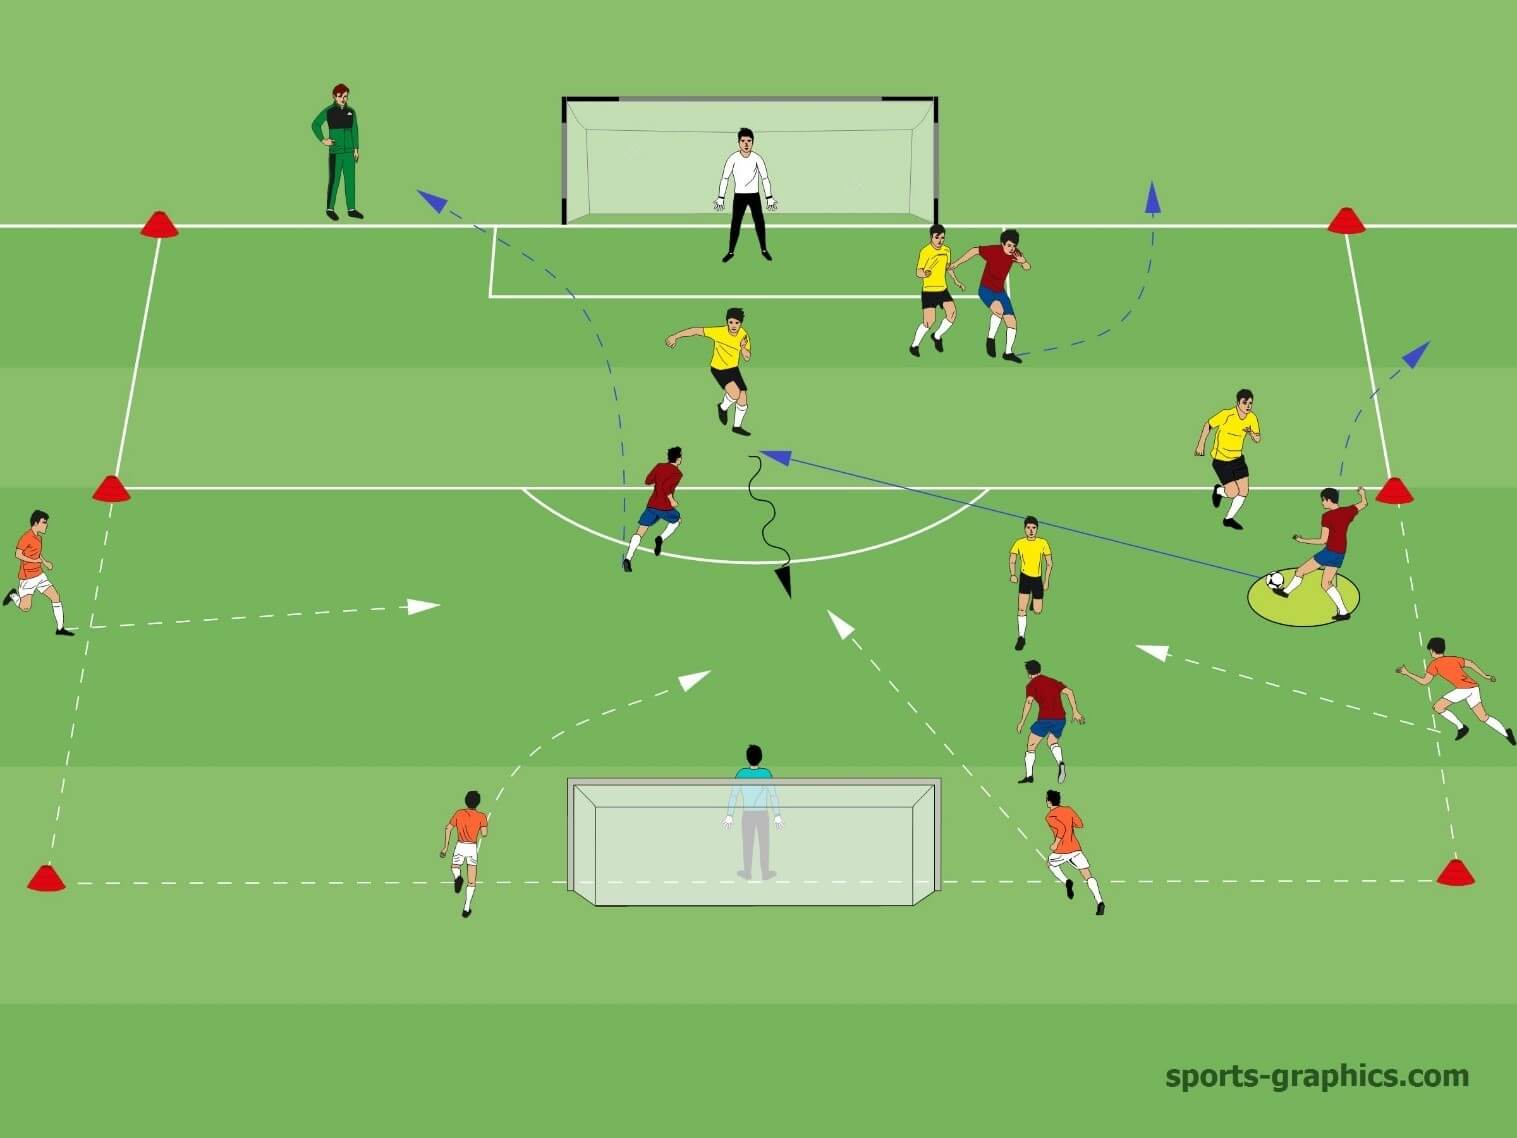 Soccer Transition Drill